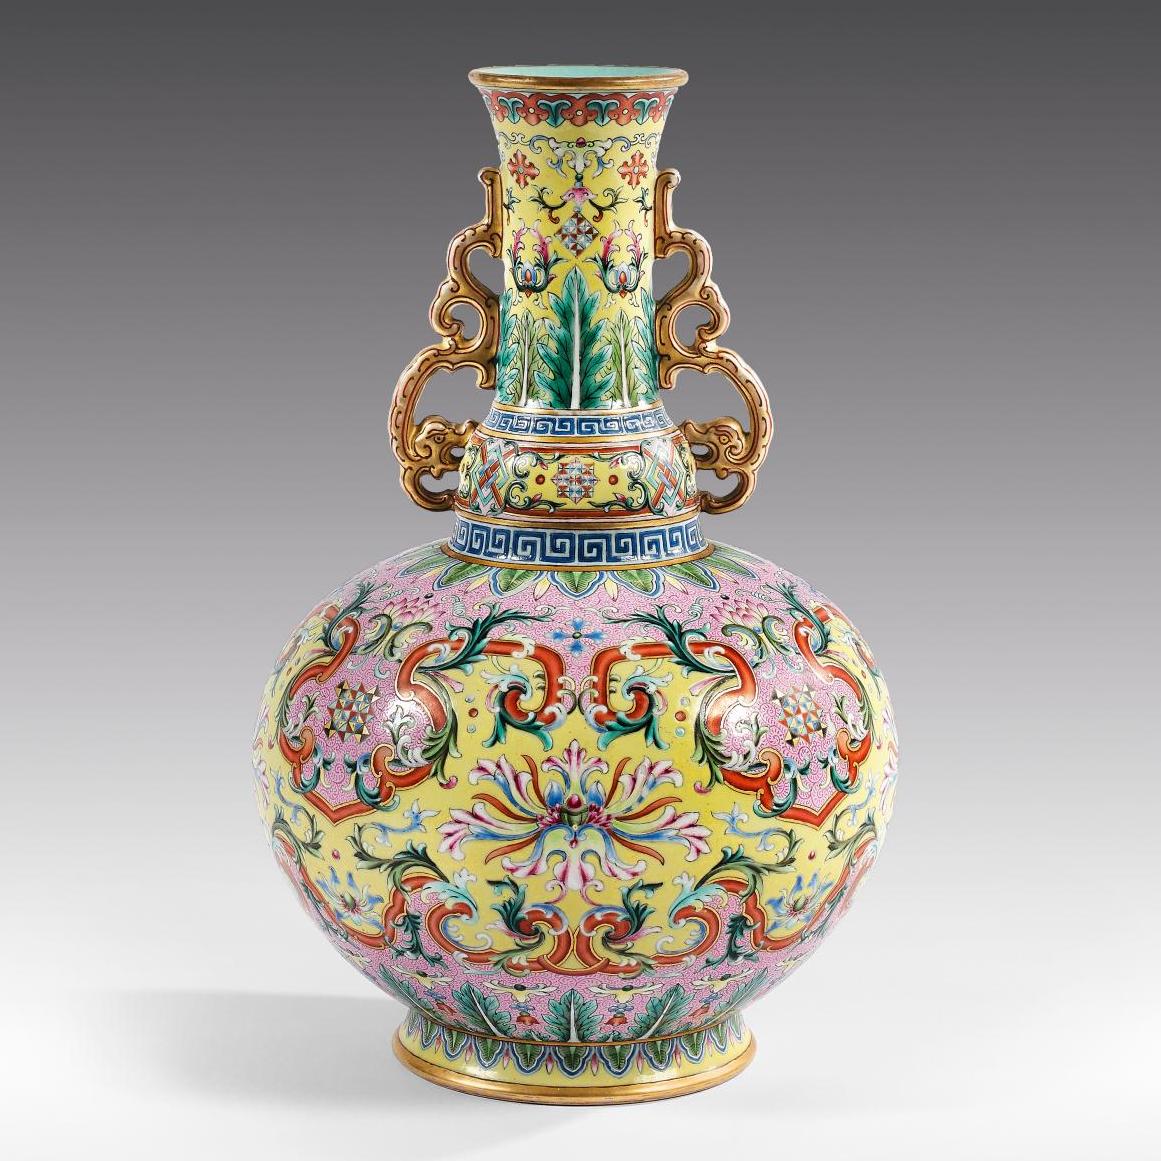 La porcelaine, l’autre creuset de l’éclosion des influences occidentales en Chine - Zoom